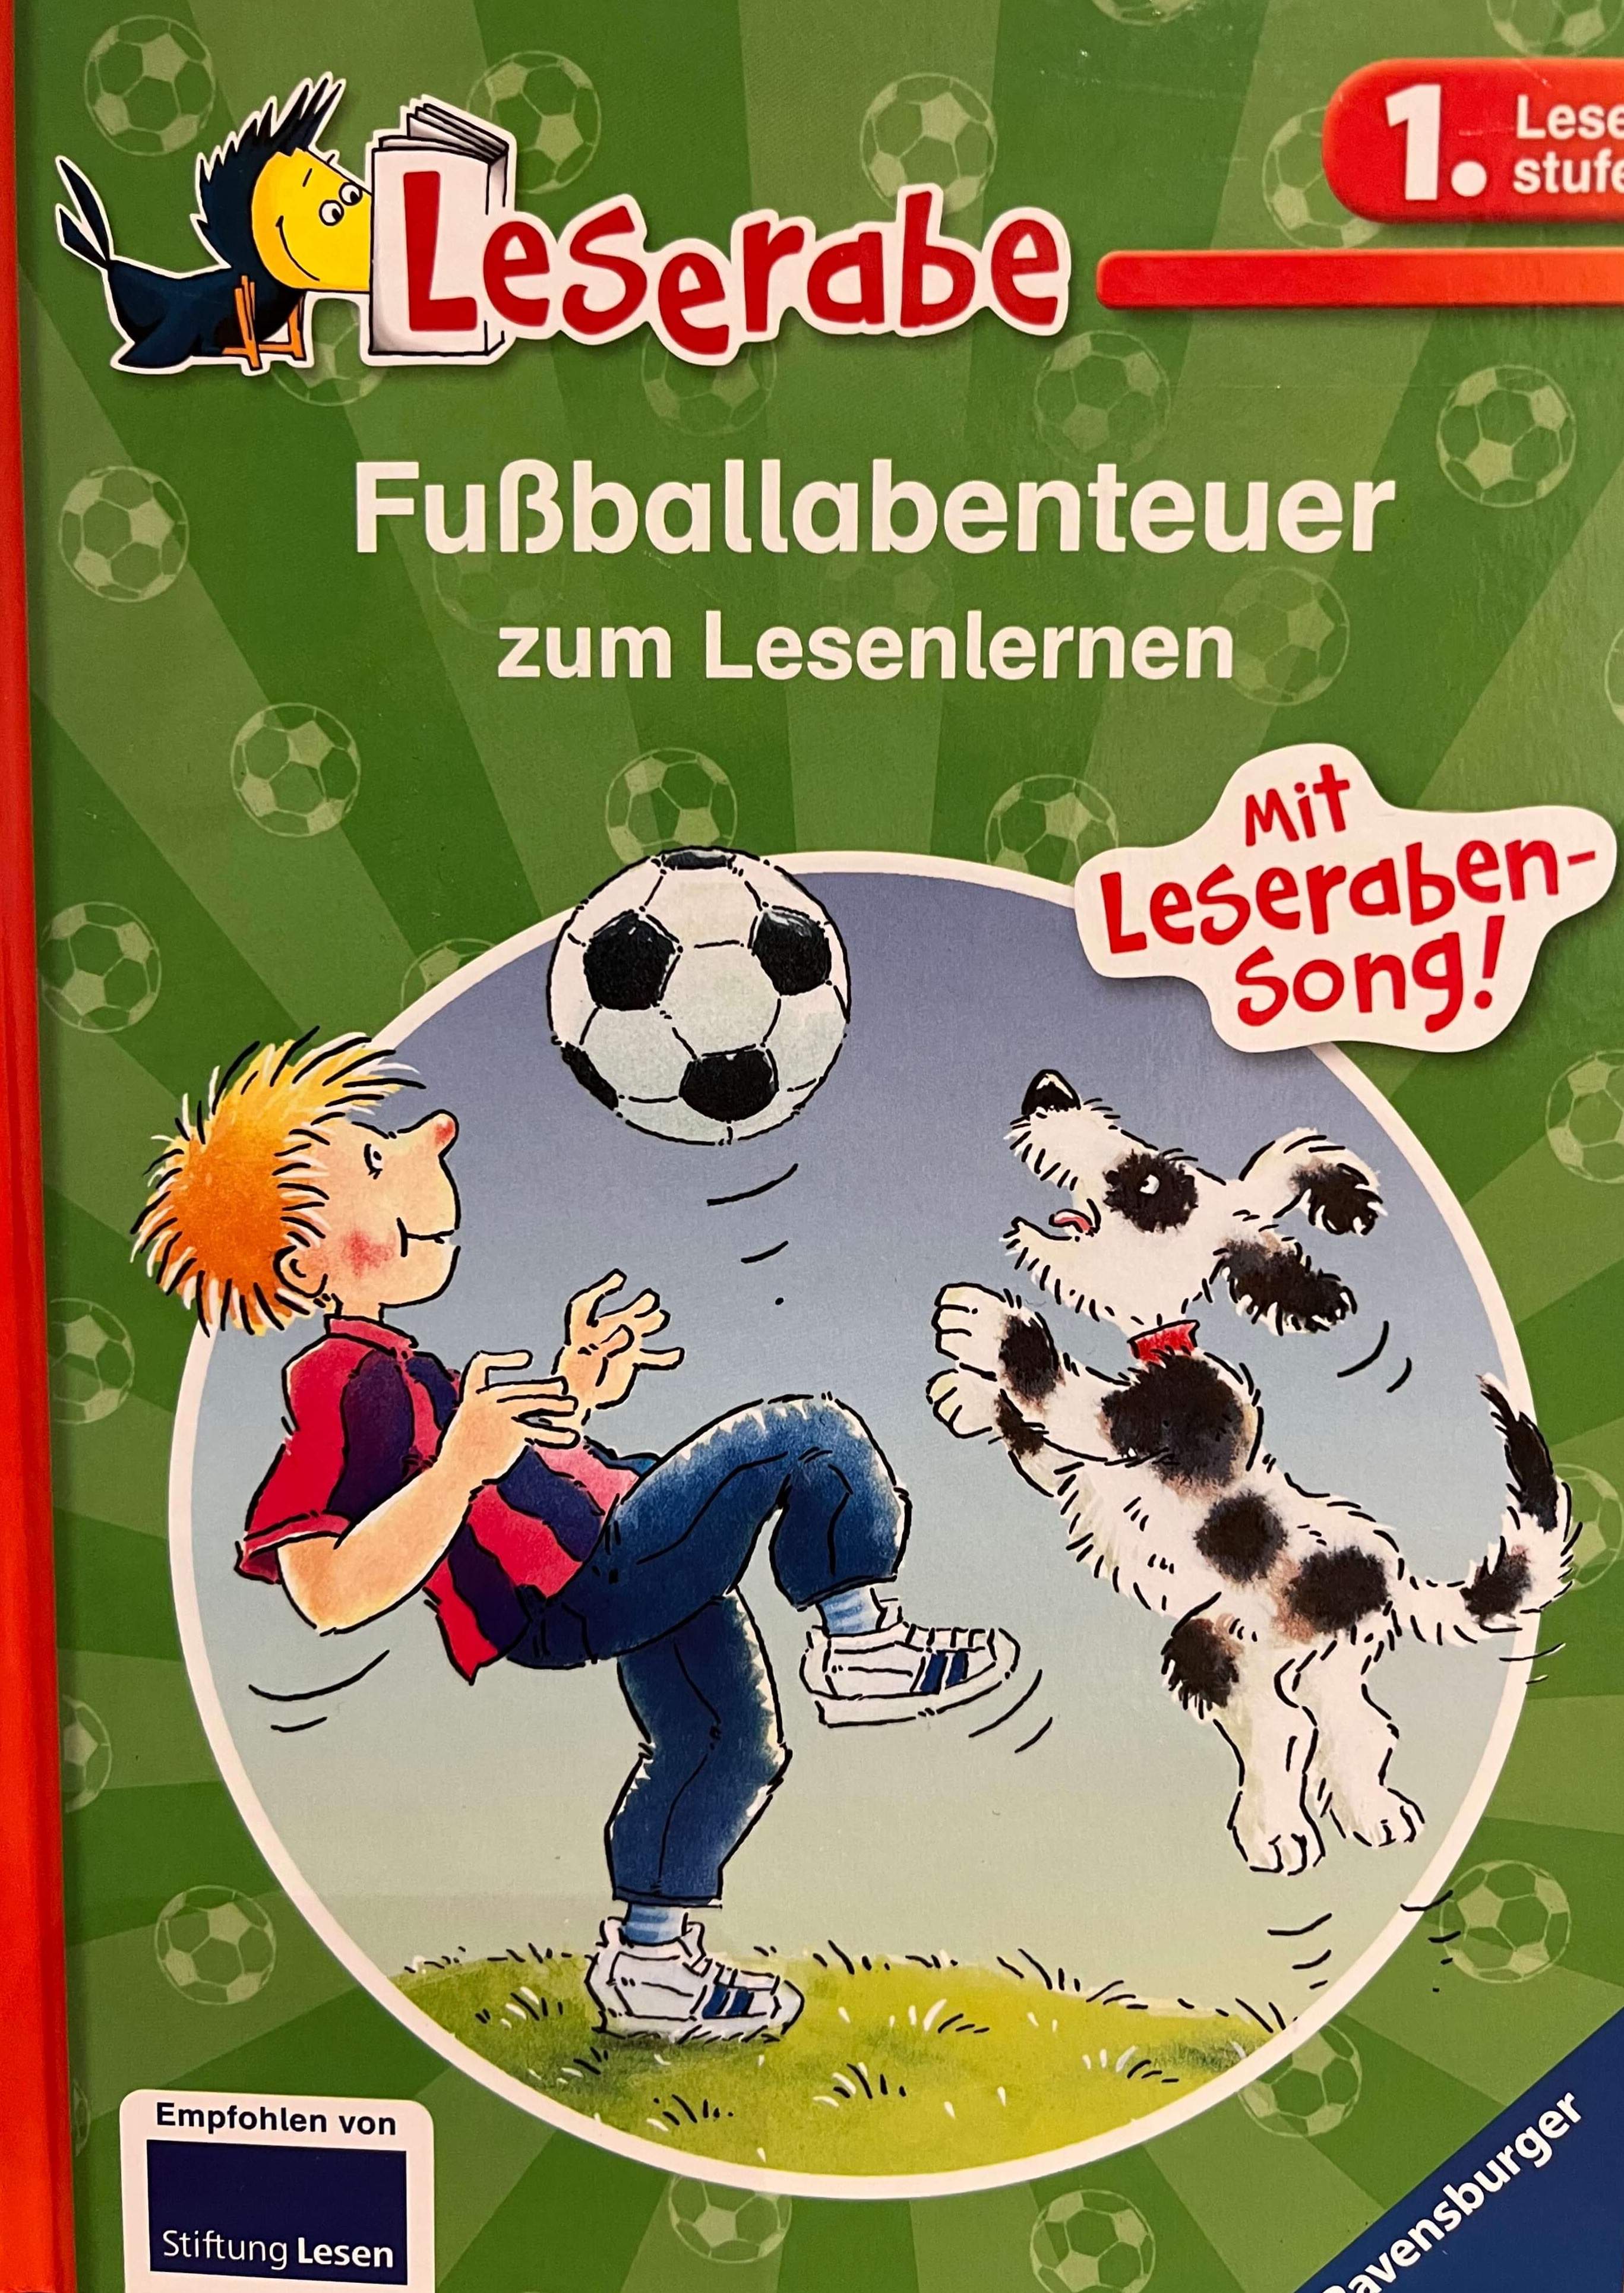 Leserabe - Fussballabenteuer zum Lesenlernen (1.Lesestufe)